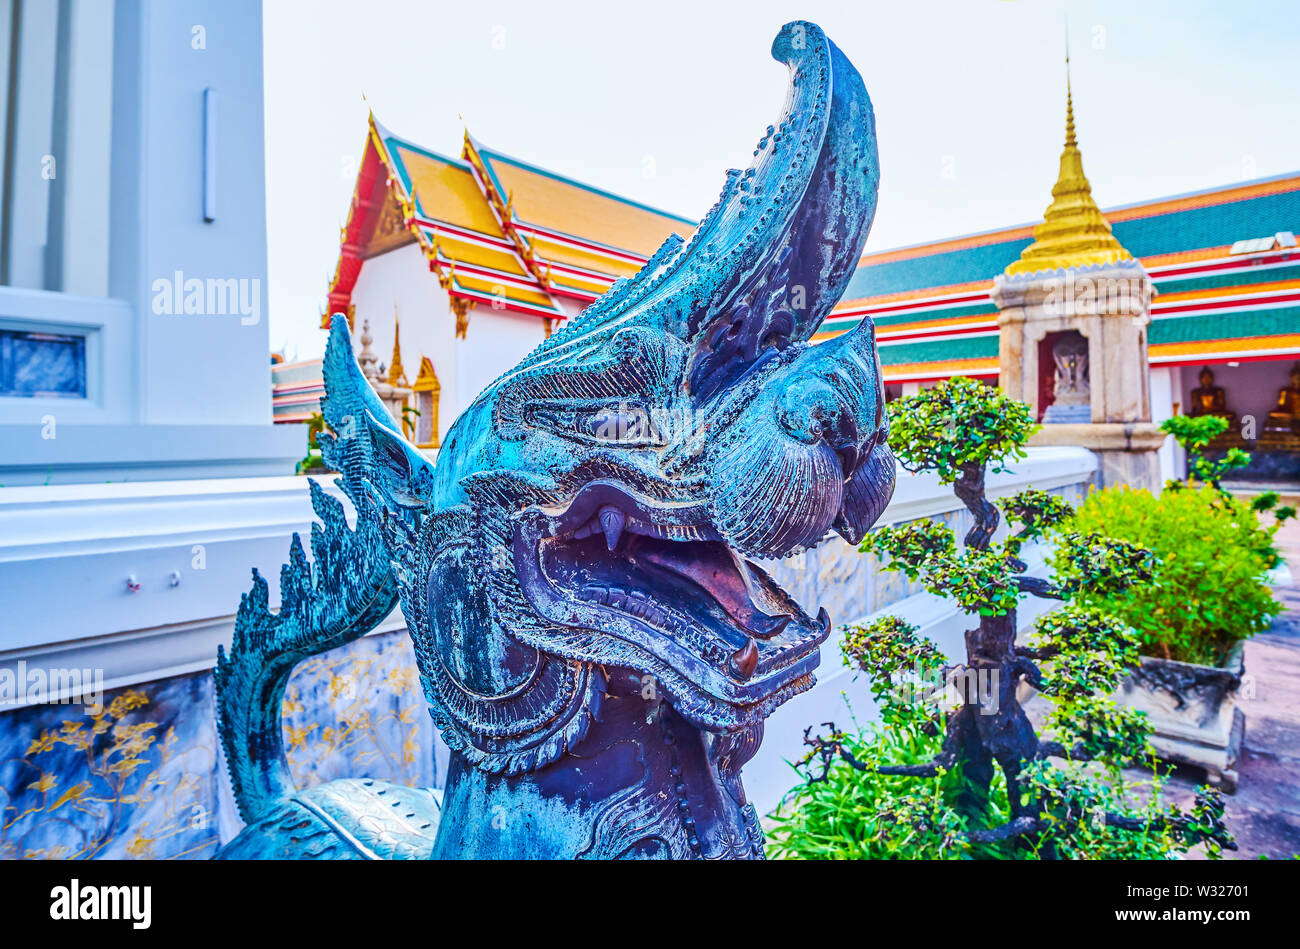 Die Schnauze der Bronze singha mit offenen Mund, die mythologische Löwe, bewacht den Eingang zur Phra Ubosot Tempel Wat Pho in Bangkok, Thail Stockfoto